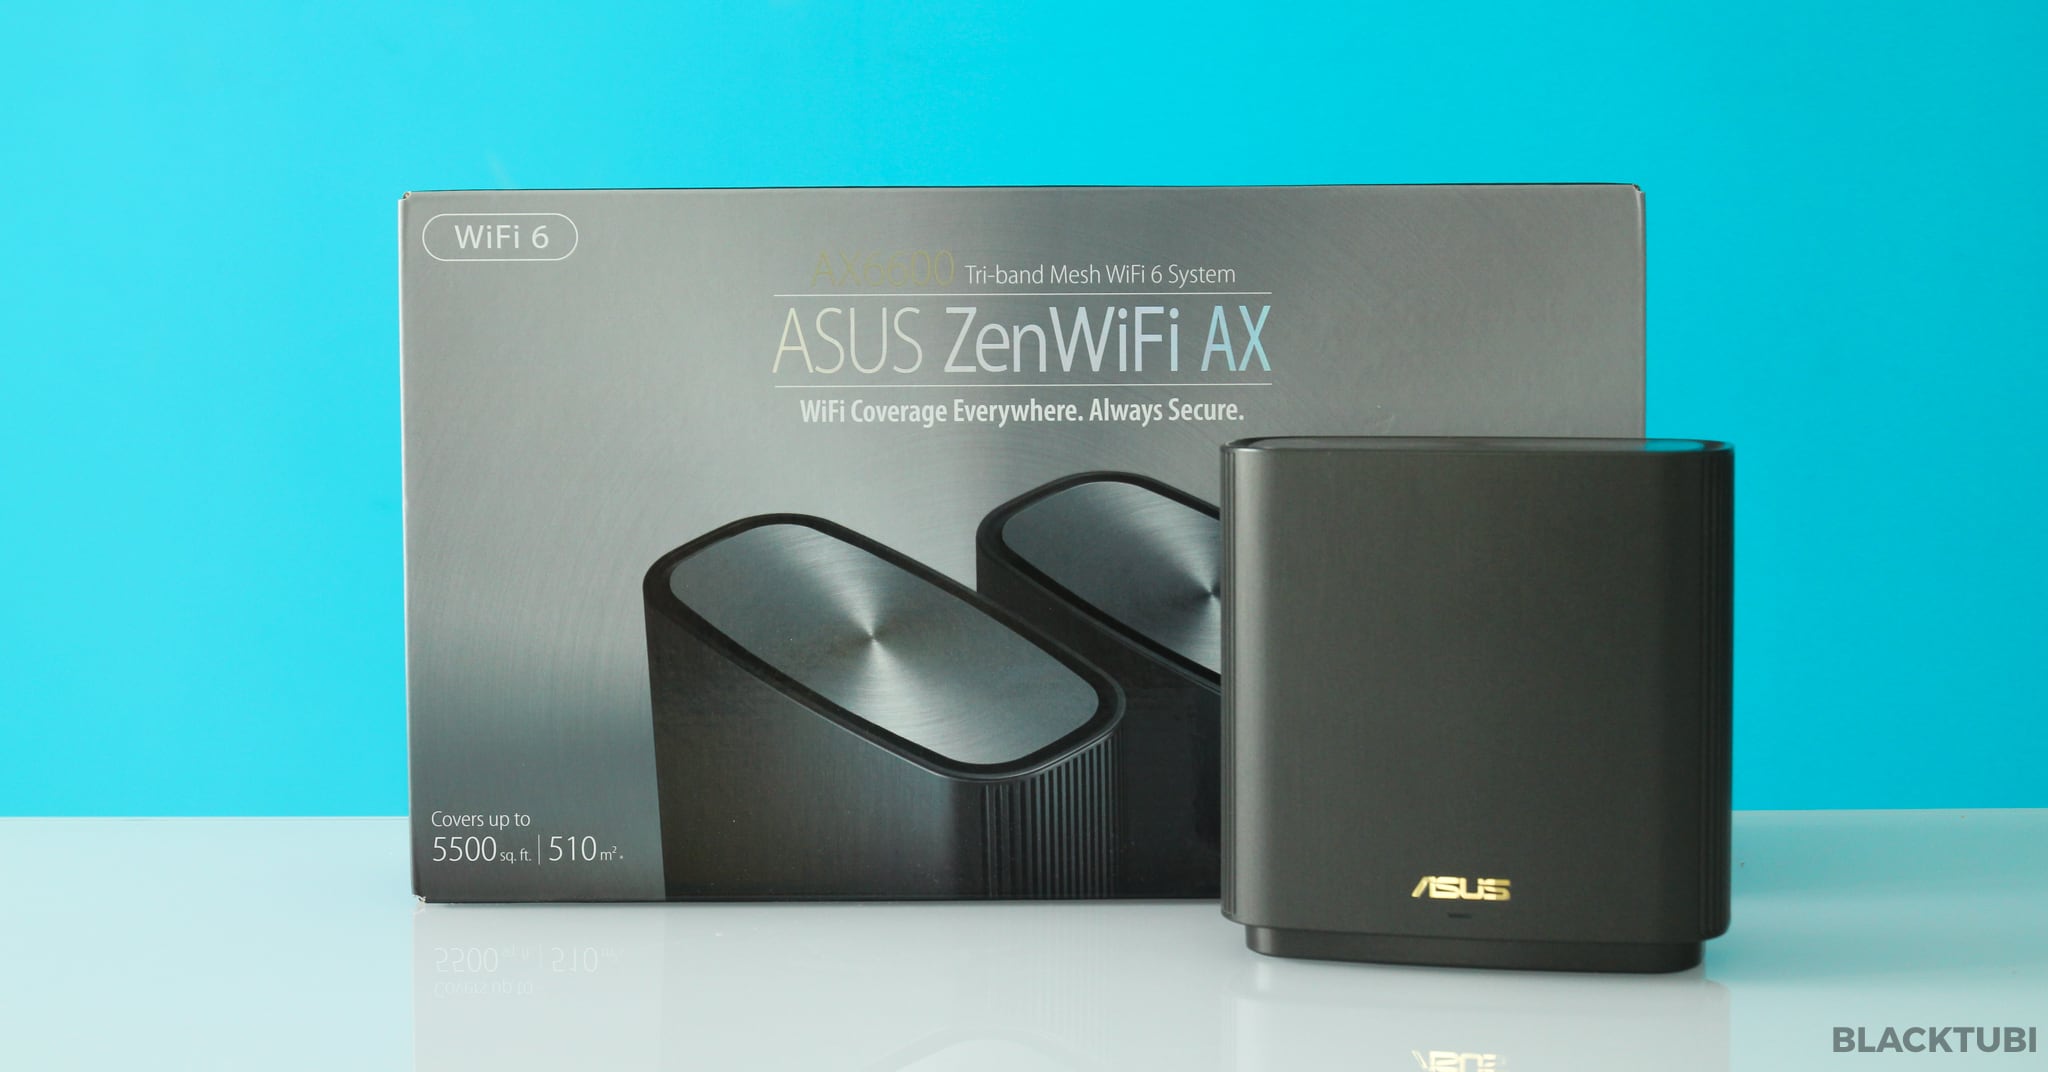 ASUS ZenWiFI AX XT8 Wi-Fi 6 Mesh WiFi : Amazing Mesh Performance